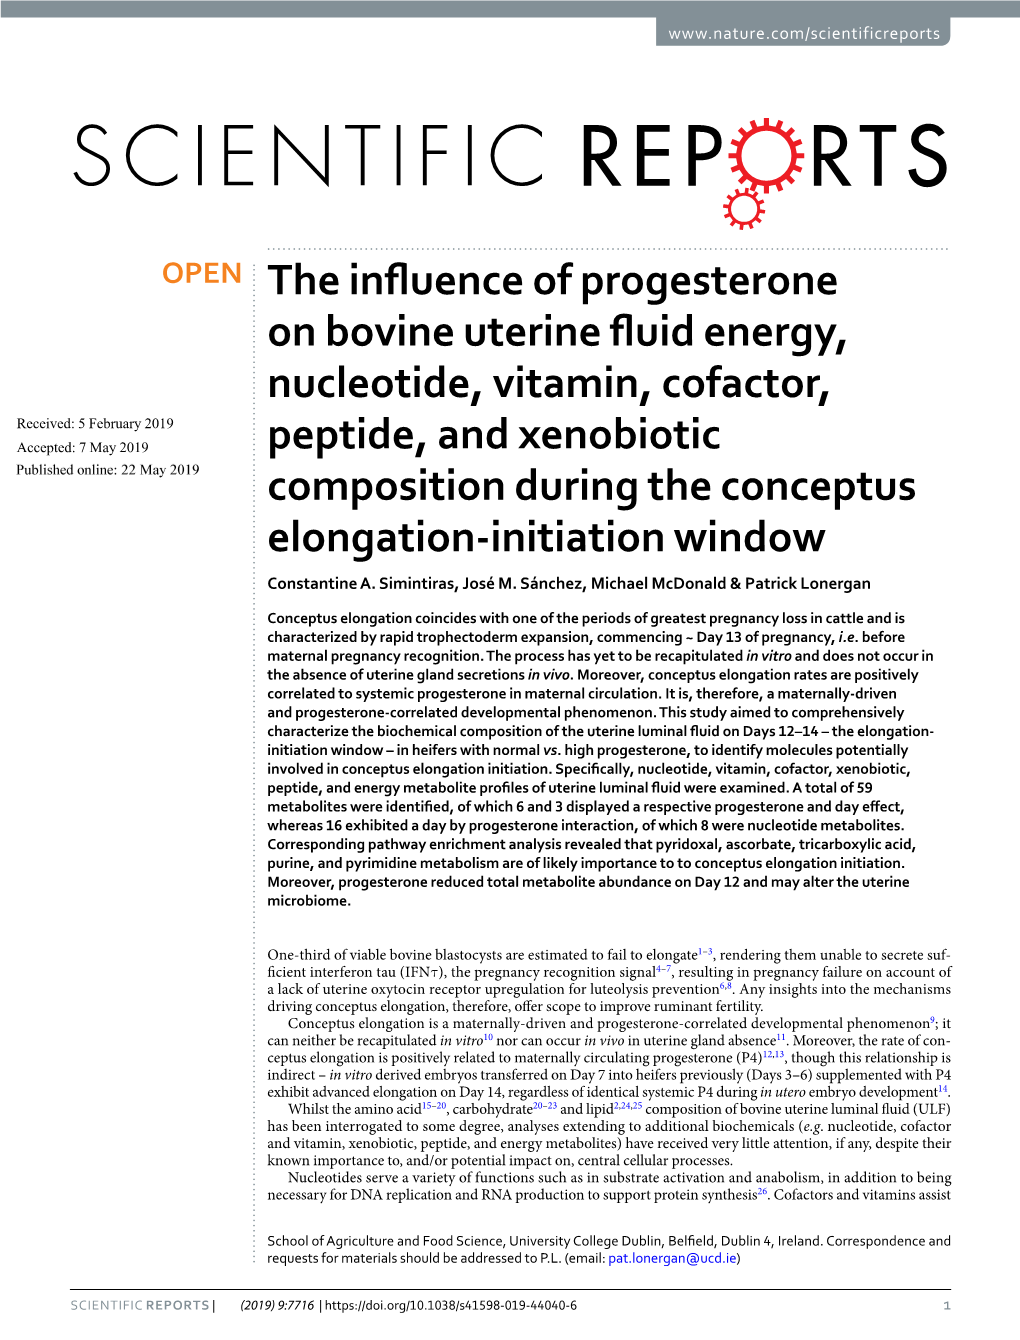 The Influence of Progesterone on Bovine Uterine Fluid Energy